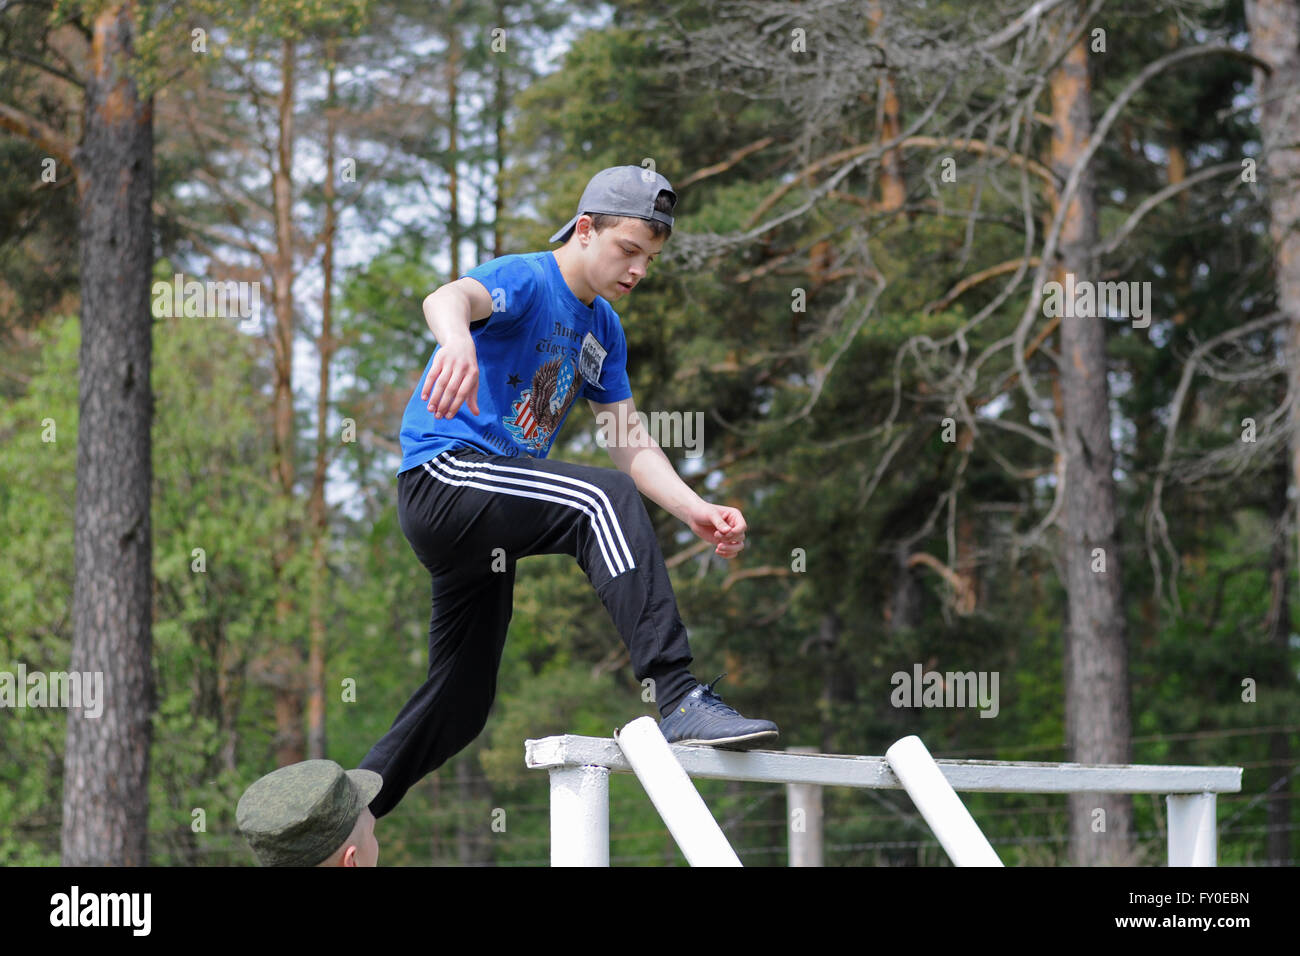 Militärische Sportspiel Zarnitsa. Durchgang-Hindernis-Parcours Stockfoto